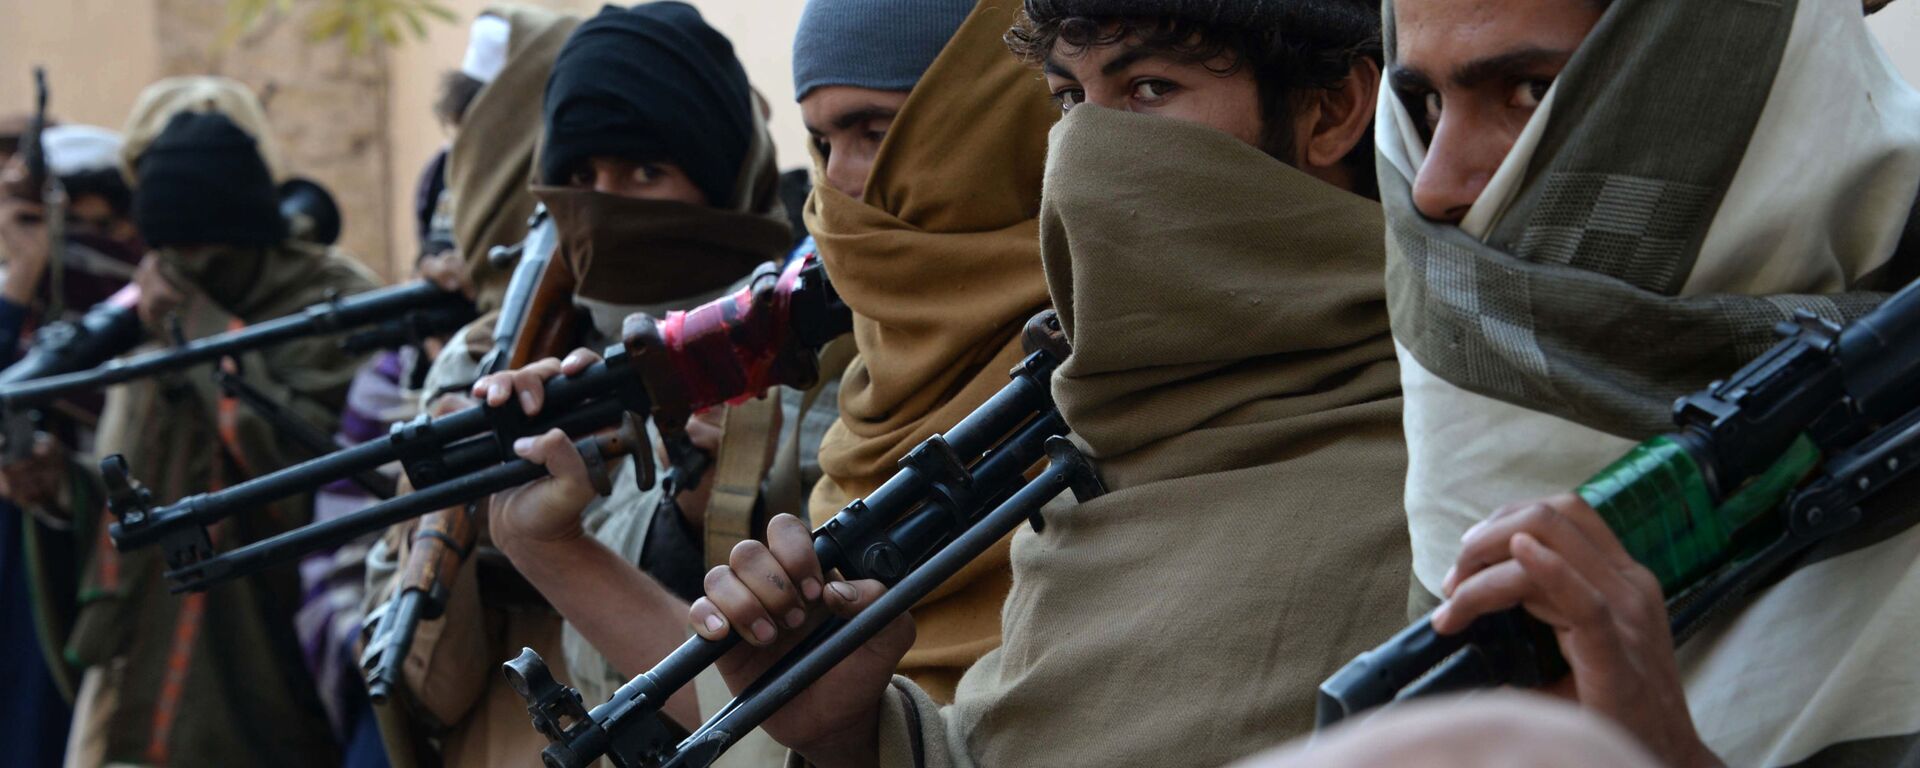 Бивши талибани са оружјем пре њиховог предавања у Џалалабаду, 2015. - Sputnik Србија, 1920, 16.08.2021